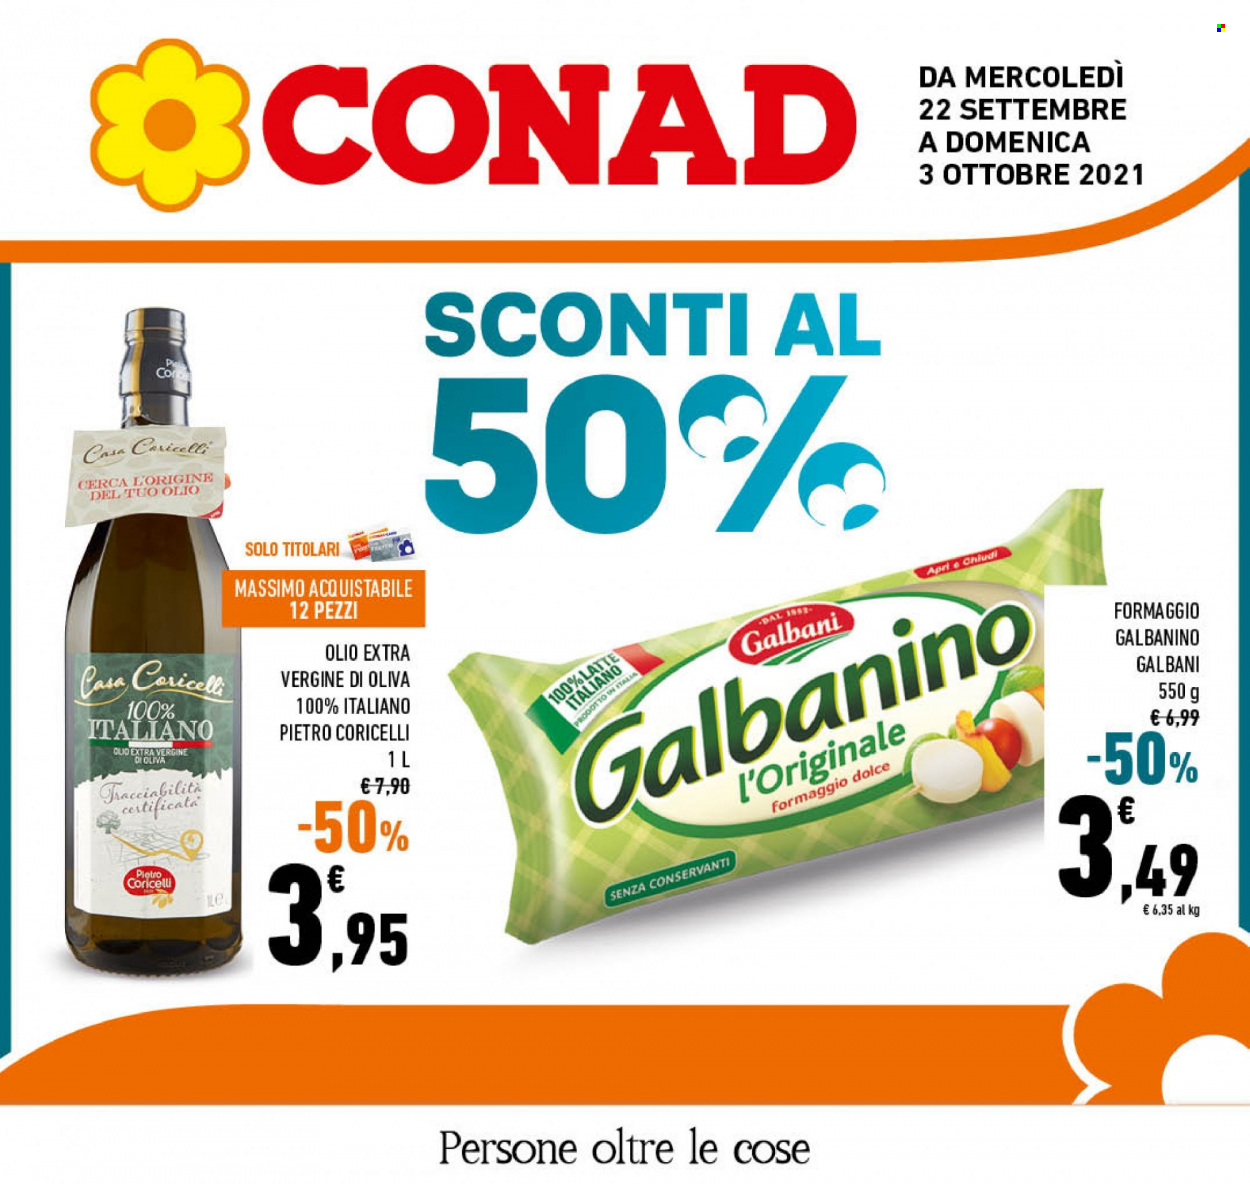 thumbnail - Volantino Conad - 22/9/2021 - 3/10/2021 - Prodotti in offerta - Galbani, formaggio, Galbanino, olio, olio extra vergine di oliva. Pagina 1.